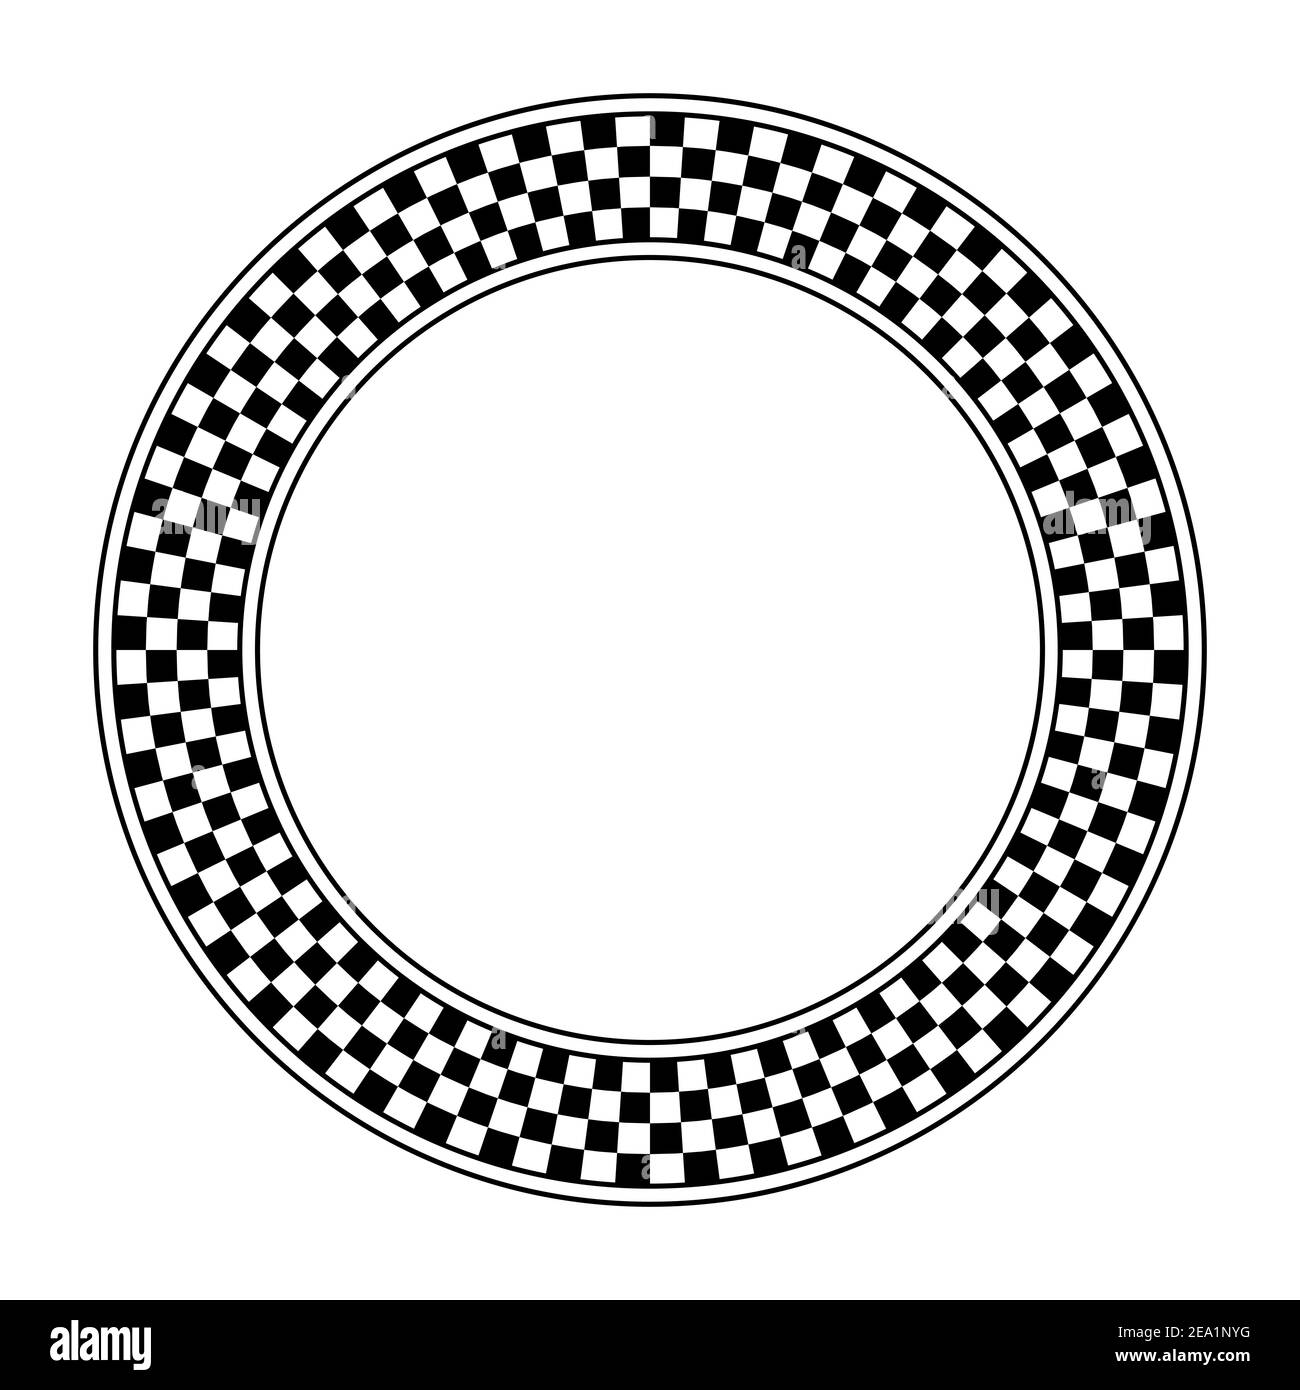 Schachbrettmuster, Kreisrahmen. Runde karierte Musterrahmen, aus einem Schachbrettdiagramm bestehend aus schwarzen und weißen abwechselnd Quadrate. Stockfoto